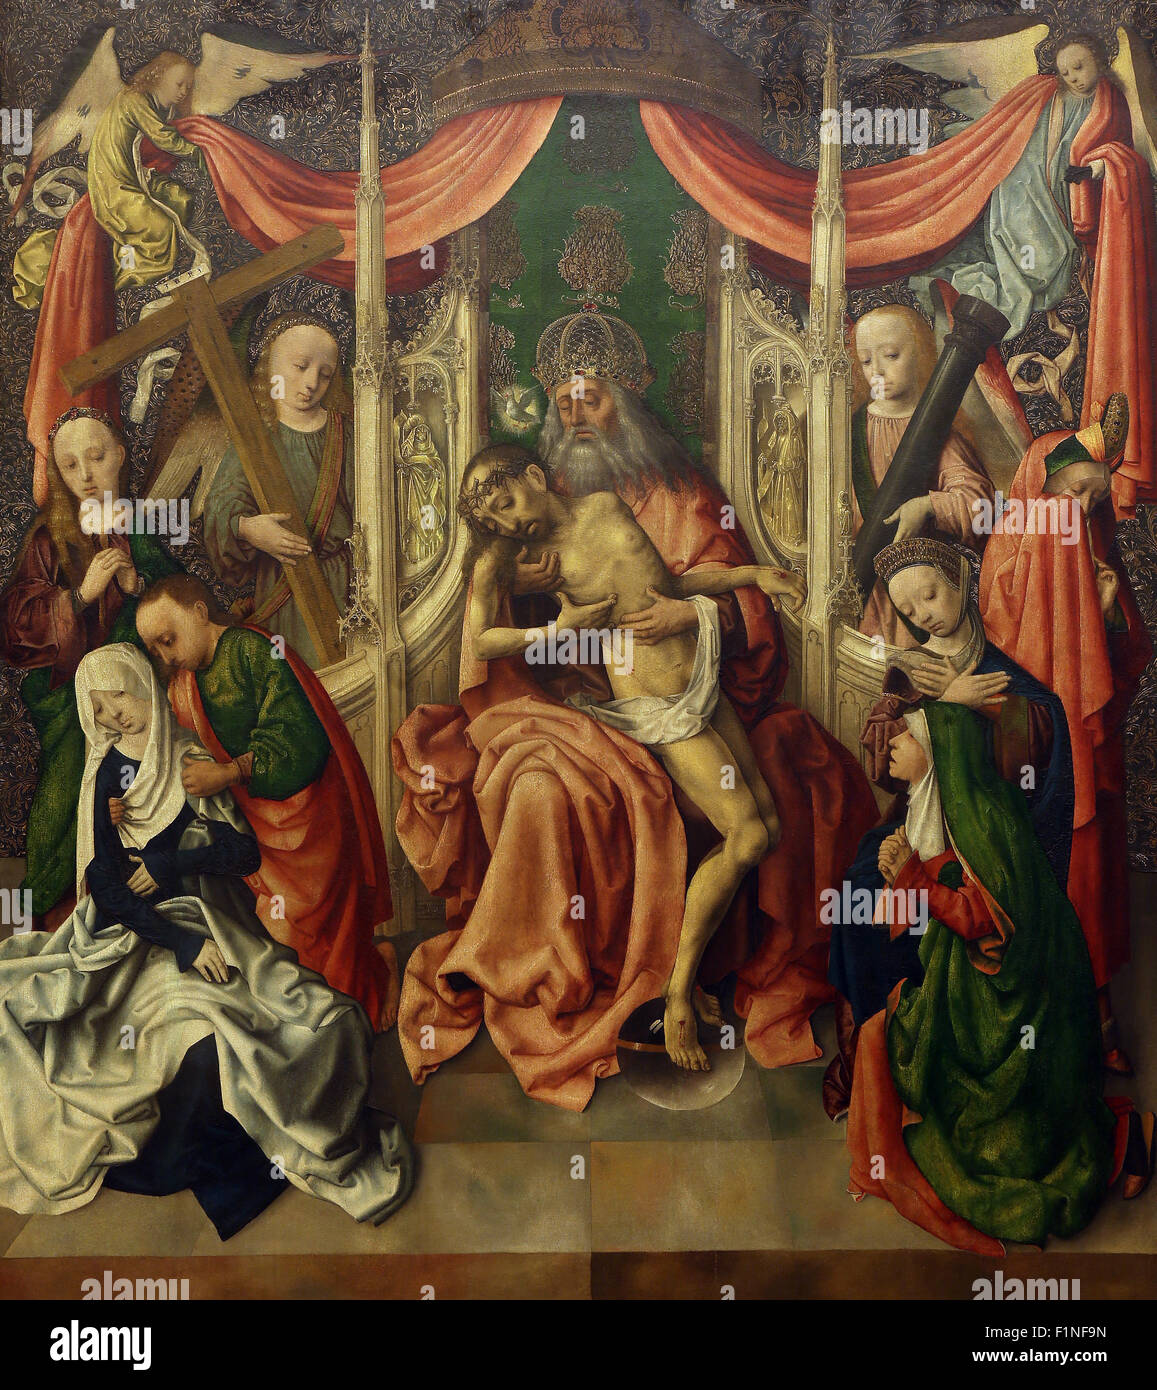 Meister der Malerei Virgo inter Virgenes: Thron der Barmherzigkeit, Sammlung der alten Meister, in Zagreb, Kroatien Stockfoto